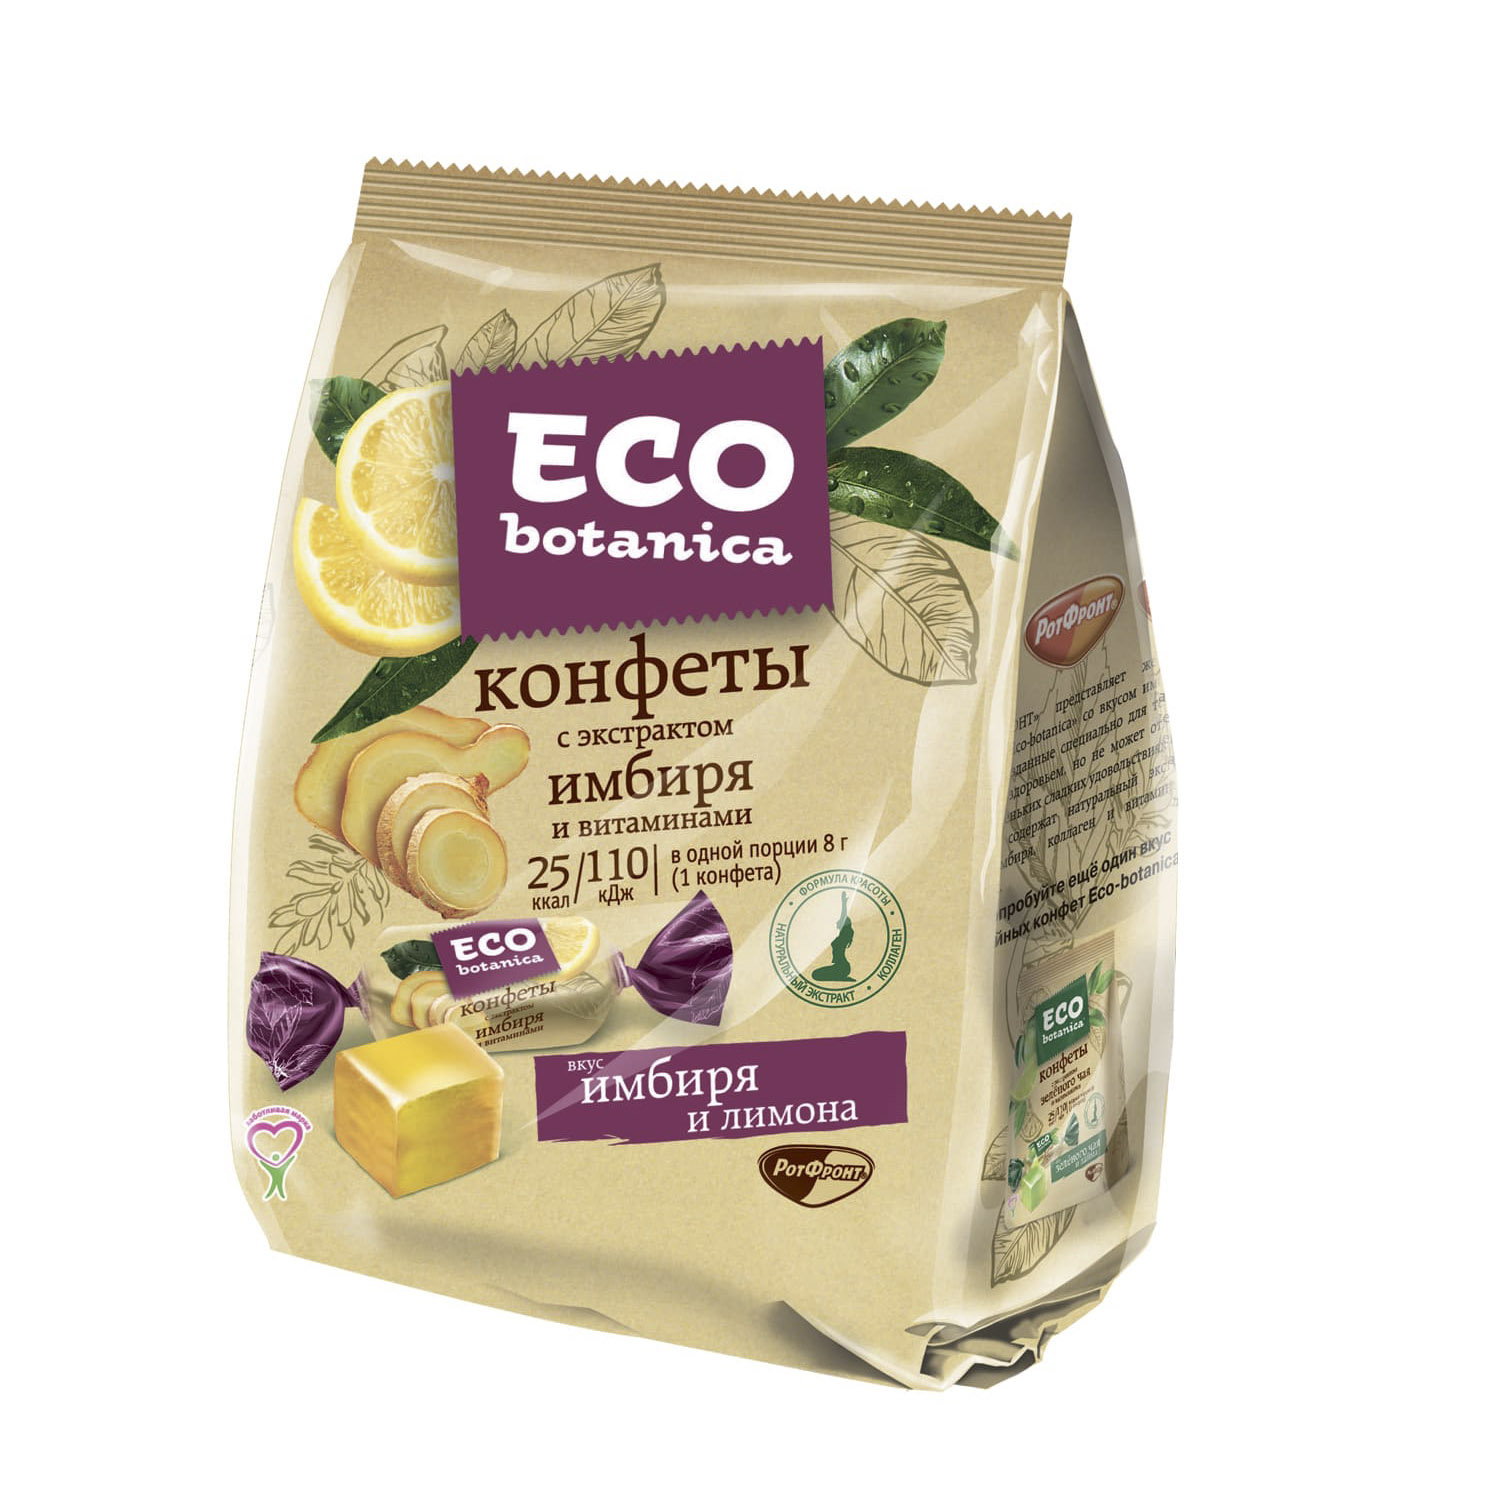 Конфеты Eco botanica с экстрактом имбиря и витаминами 200 г конфеты eco botanica 200г вкус брусника морошка ротфронт